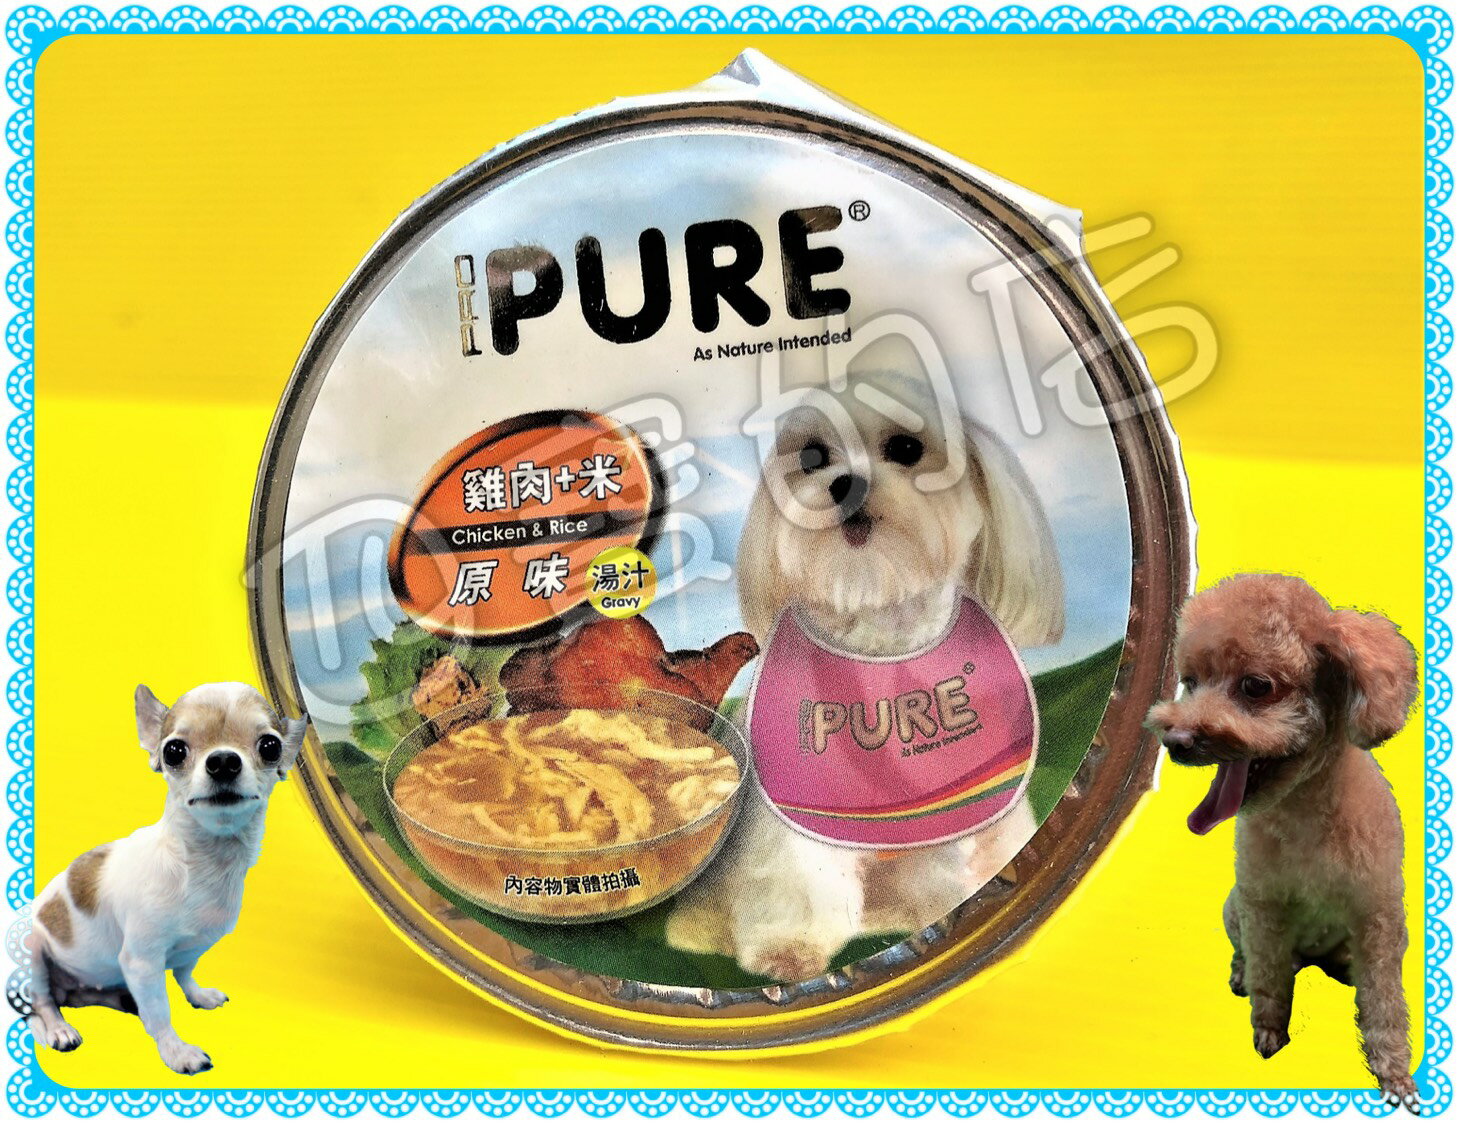 ✪四寶的店n✪猋➤(原味)雞肉+米 80g/罐 ➤六種口味 PURE PUREP 巧鮮杯 猋 犬 罐頭 狗 餐盒 鋁箔杯